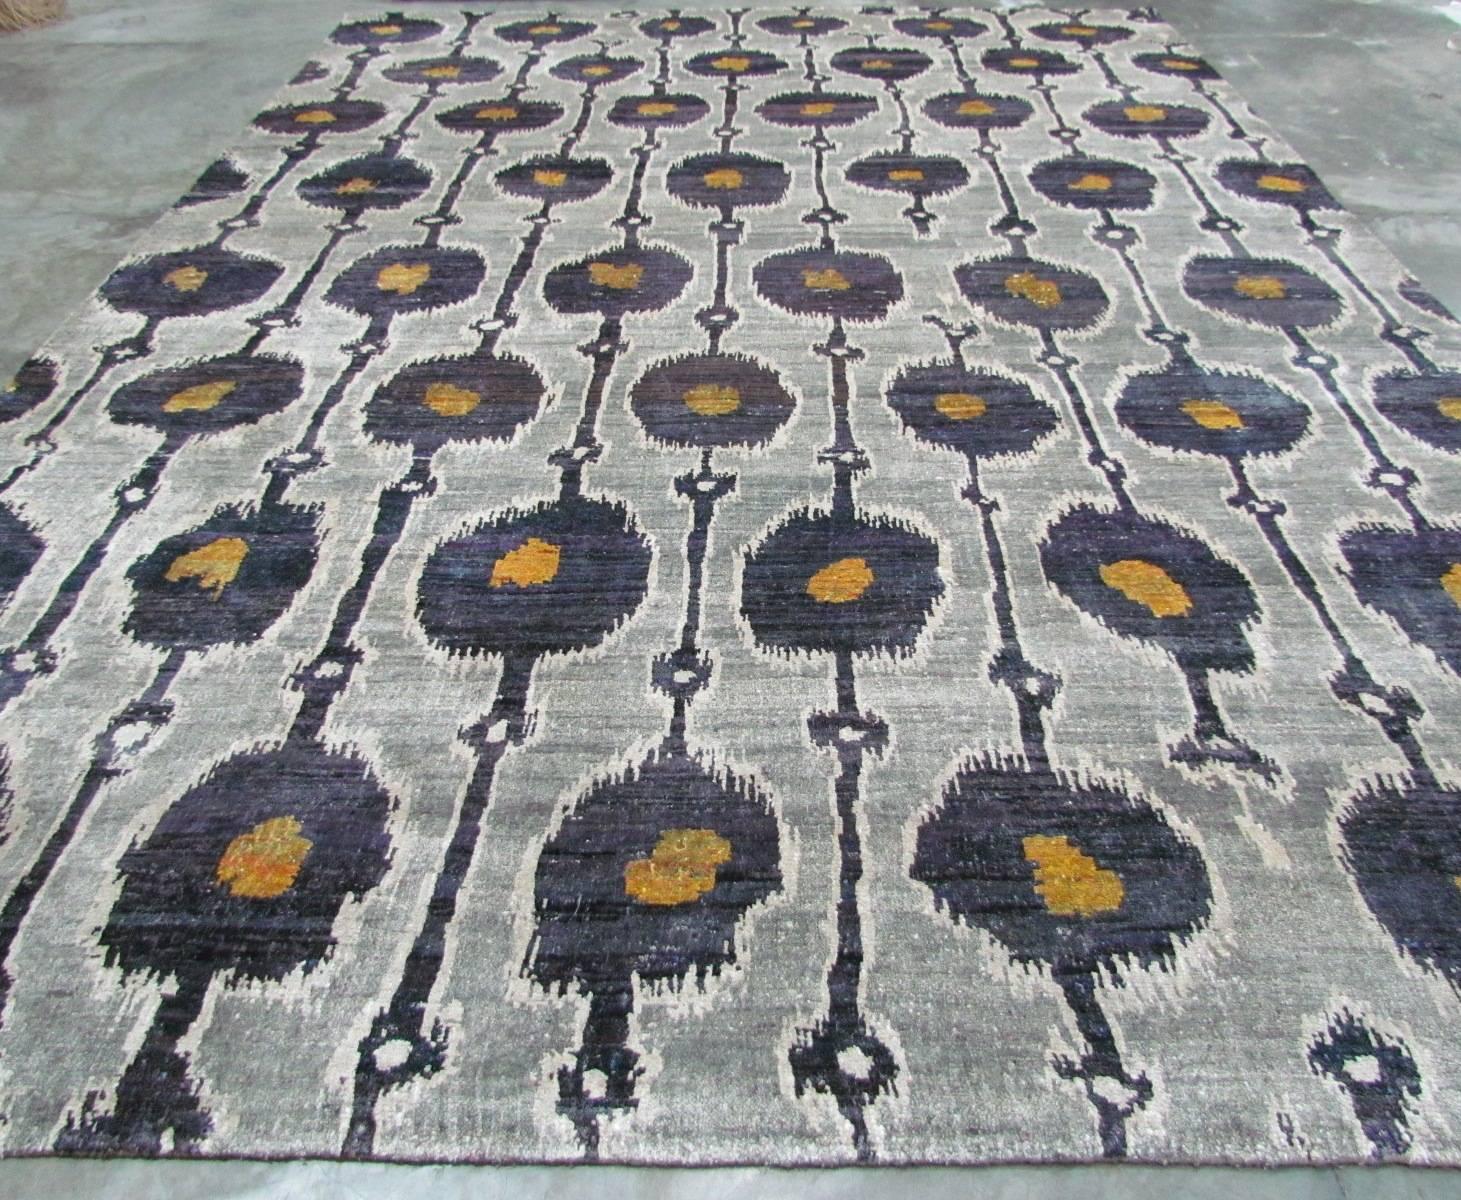 Die Meisterweber der Rumi-Kollektion spinnen und knüpfen die feinsten Reste nachhaltiger Sari-Seide kunstvoll neu und schaffen so die bahnbrechende Rumi-Seidenkollektion. Diese bemerkenswerten Muster in frischen Farben geben eine neue Ästhetik für